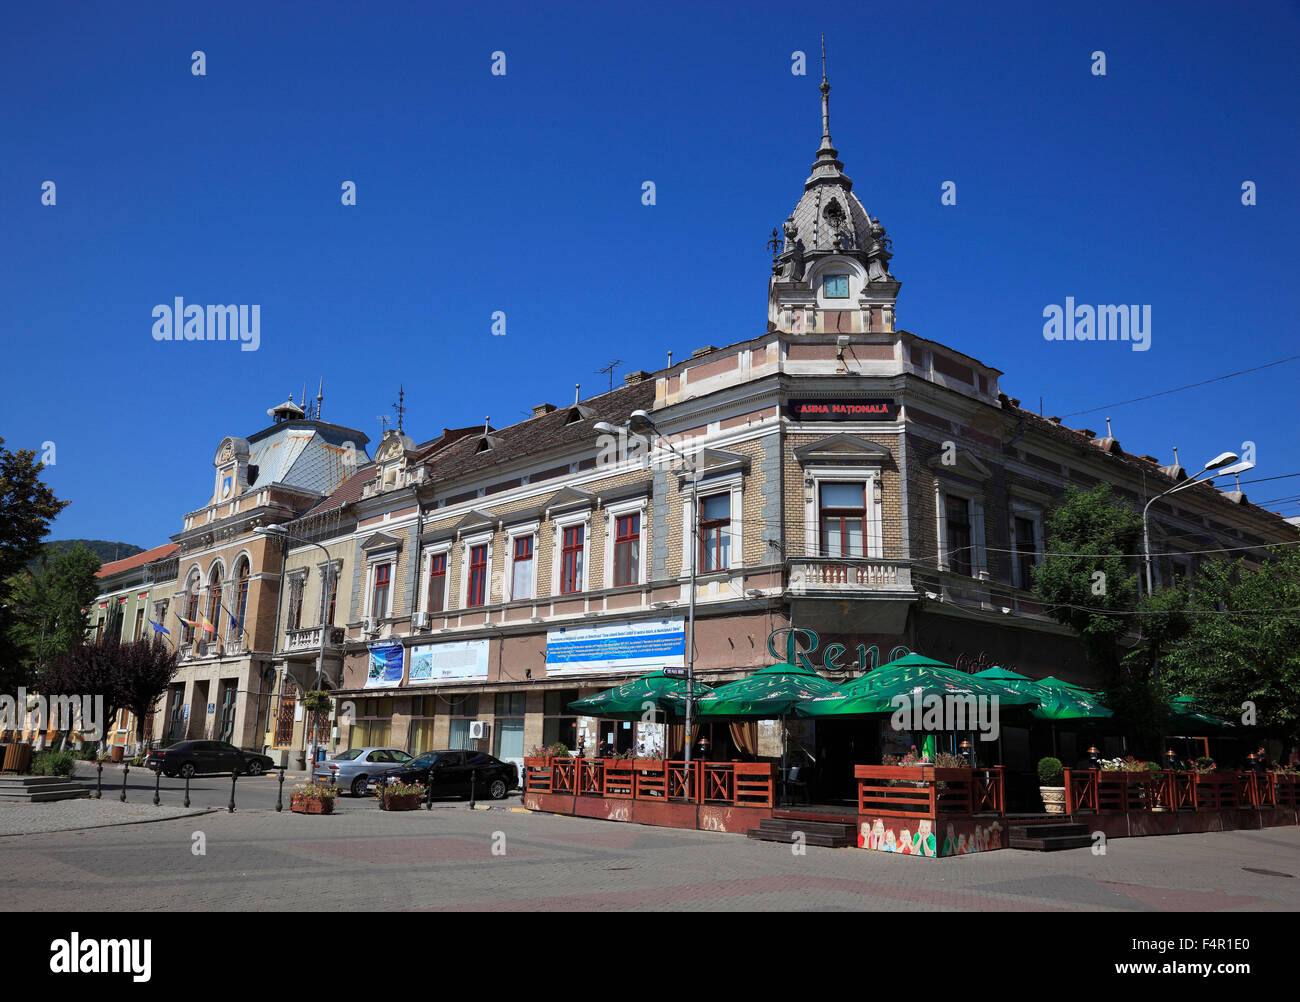 Deva, Casino neben dem Rathaus, Siebenbürgen, Rumänien Stockfoto